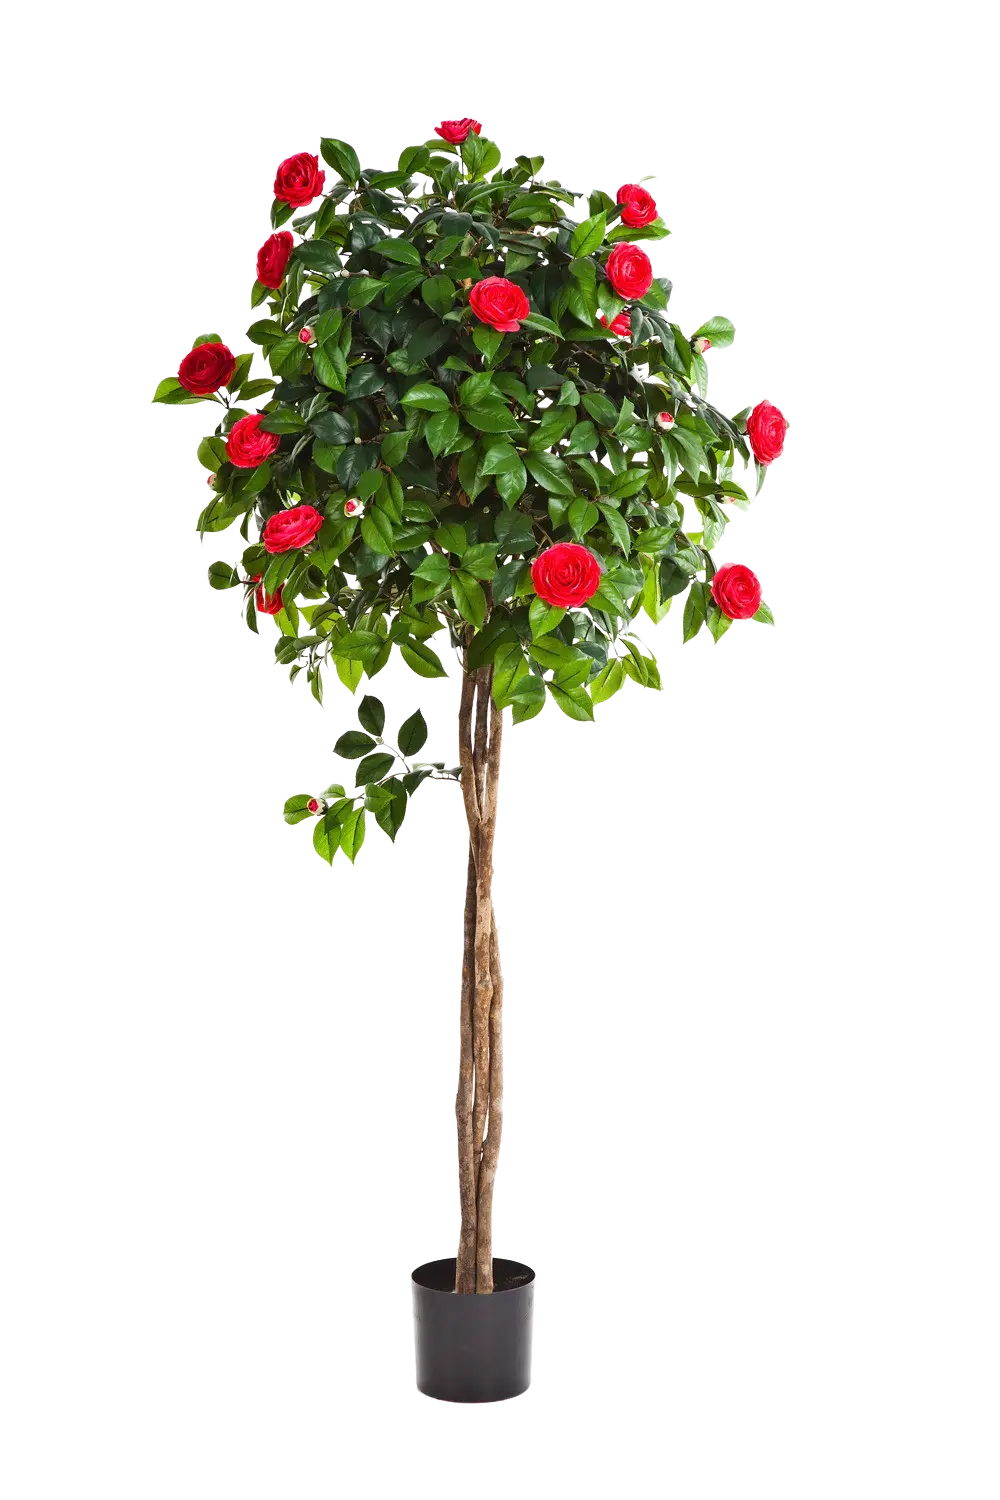 Künstlicher Kamelienbaum - Pelin auf transparentem Hintergrund mit echt wirkenden Kunstblättern. Diese Kunstpflanze gehört zur Gattung/Familie der "Kamelien" bzw. "Kunst-Kamelien".